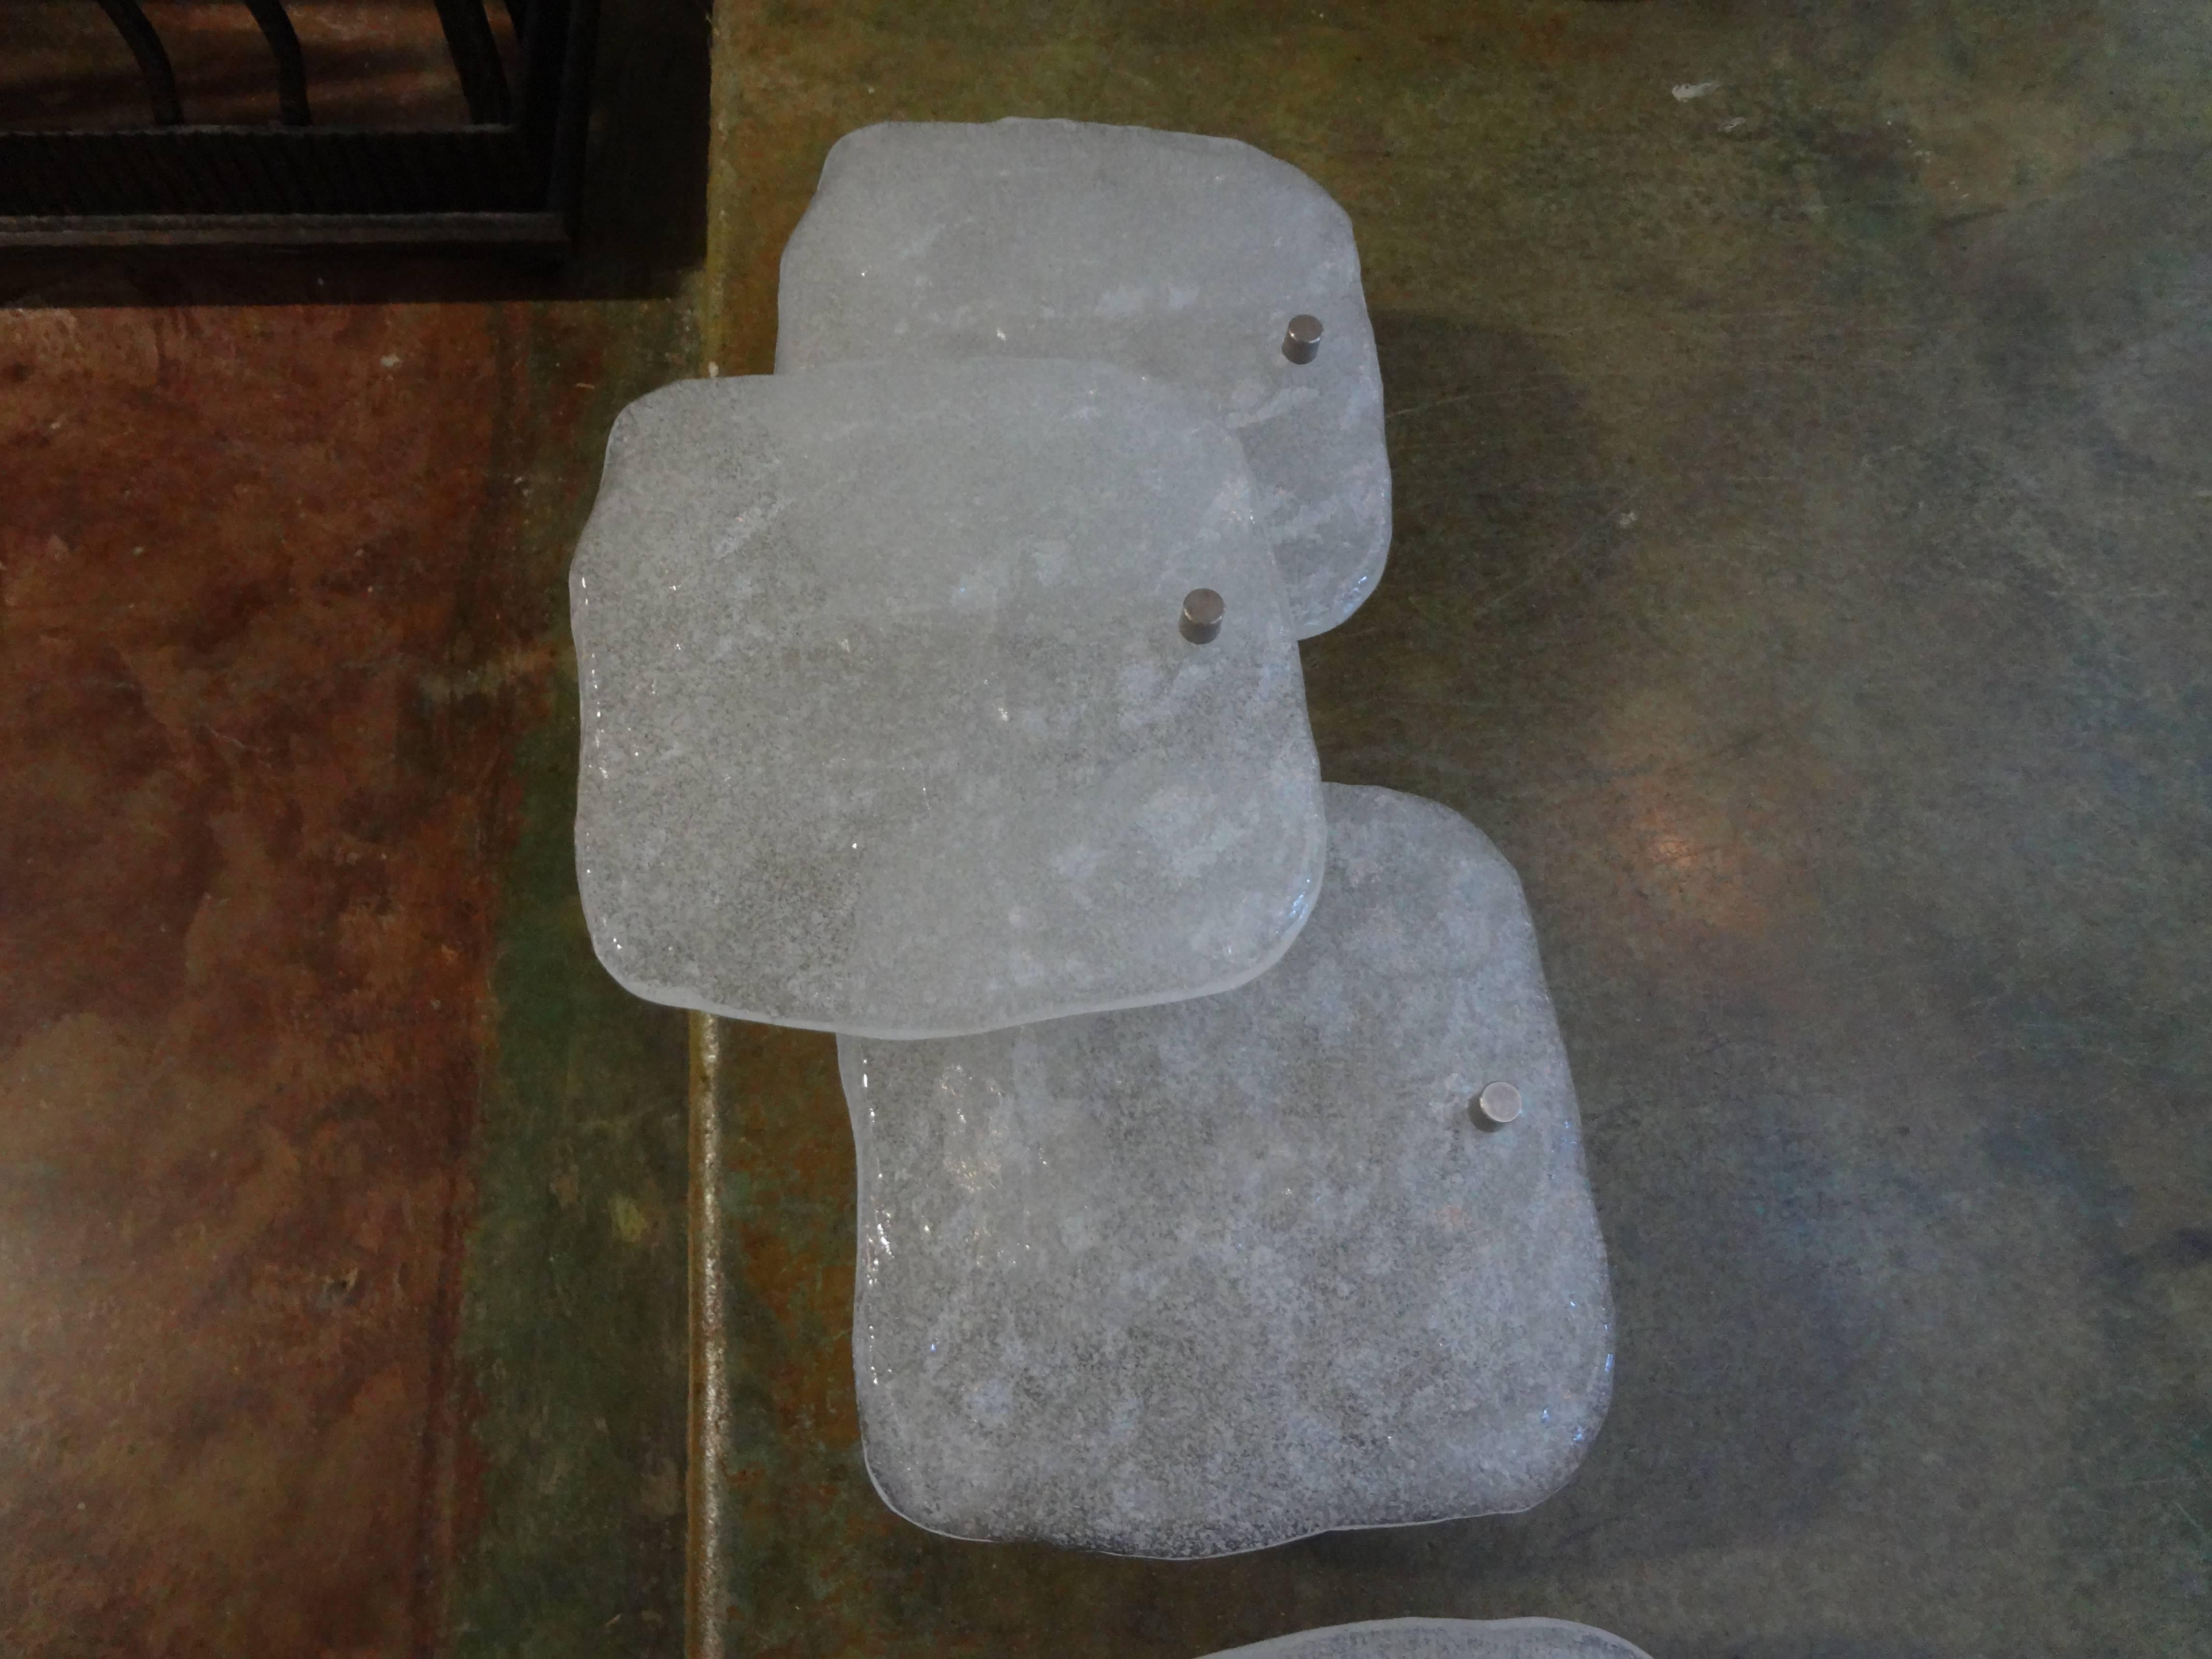 Superbe paire d'appliques à bloc de glace en verre Kalmar ou murano du milieu du siècle avec des structures en acier nickelé. Cette paire d'appliques vintage en verre a été nouvellement câblée pour le marché américain.

